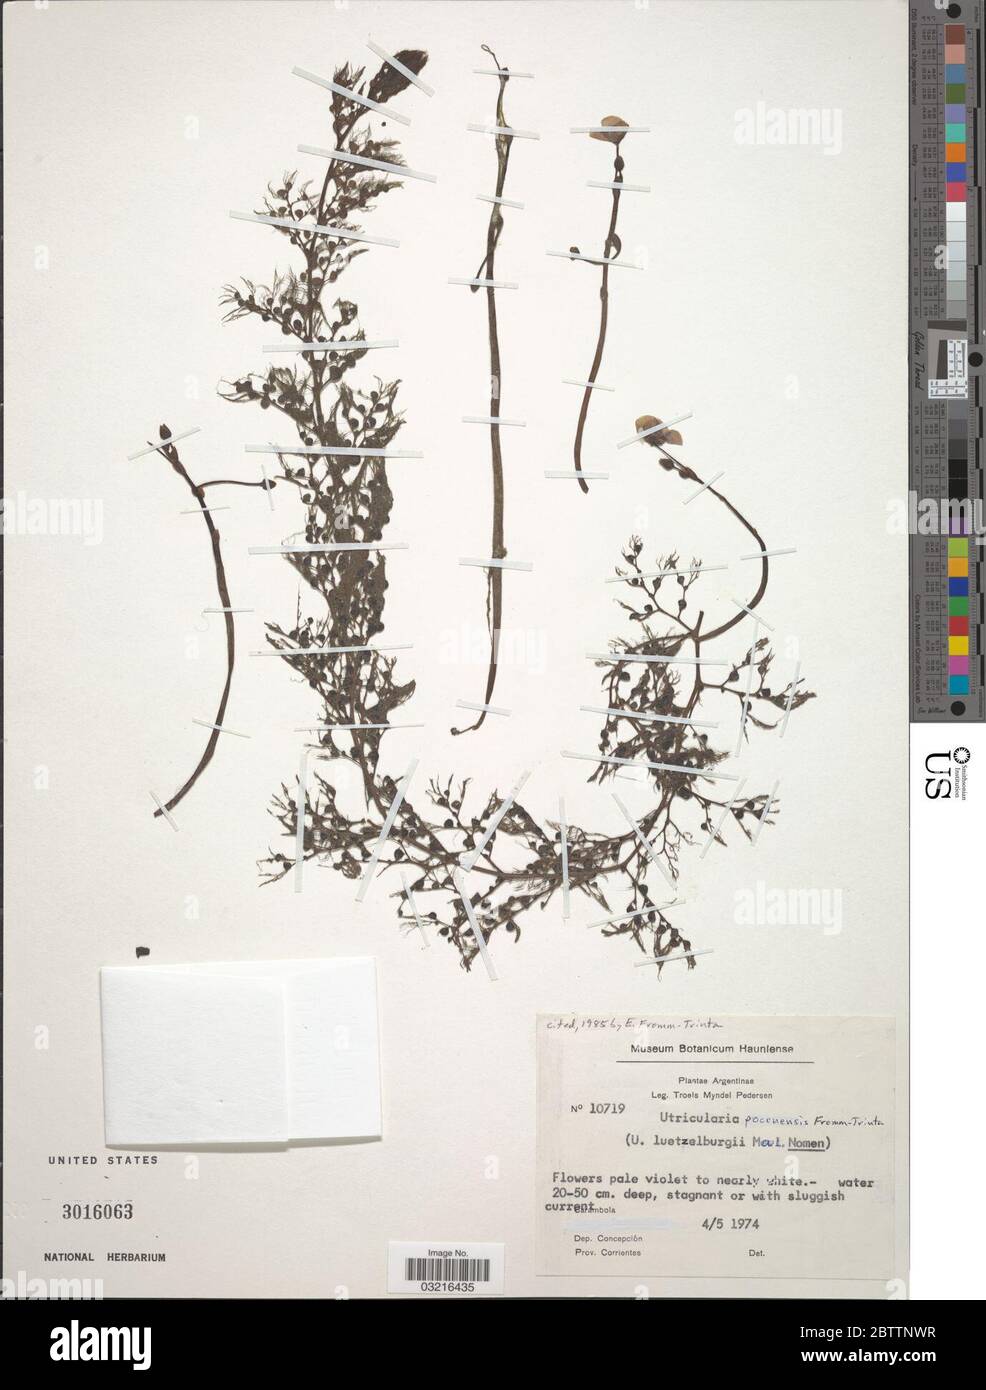 Utricularia poconensis Fromm. Foto Stock